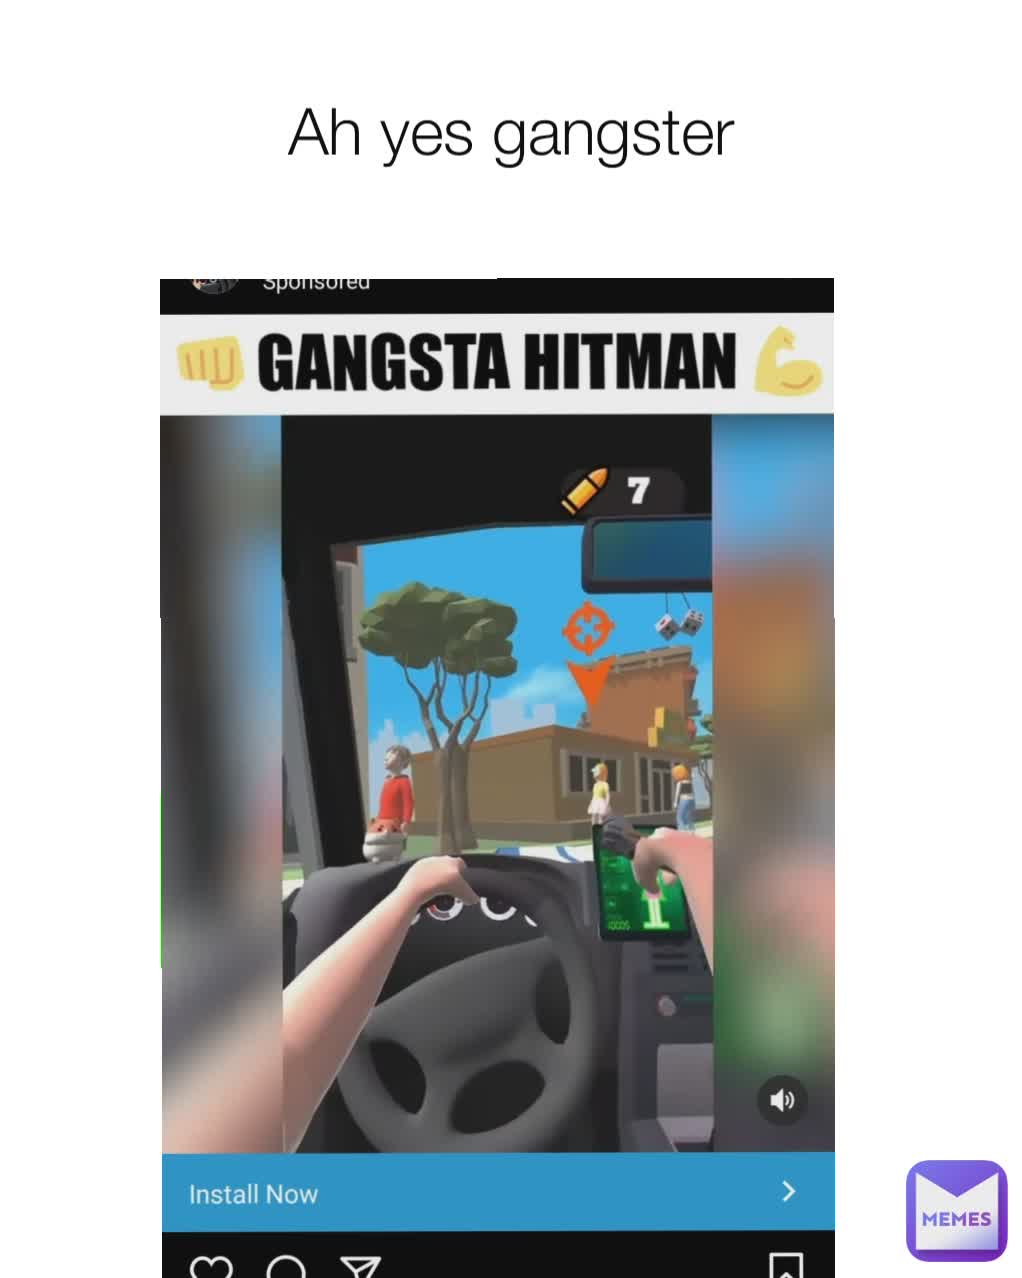 Ah yes gangster